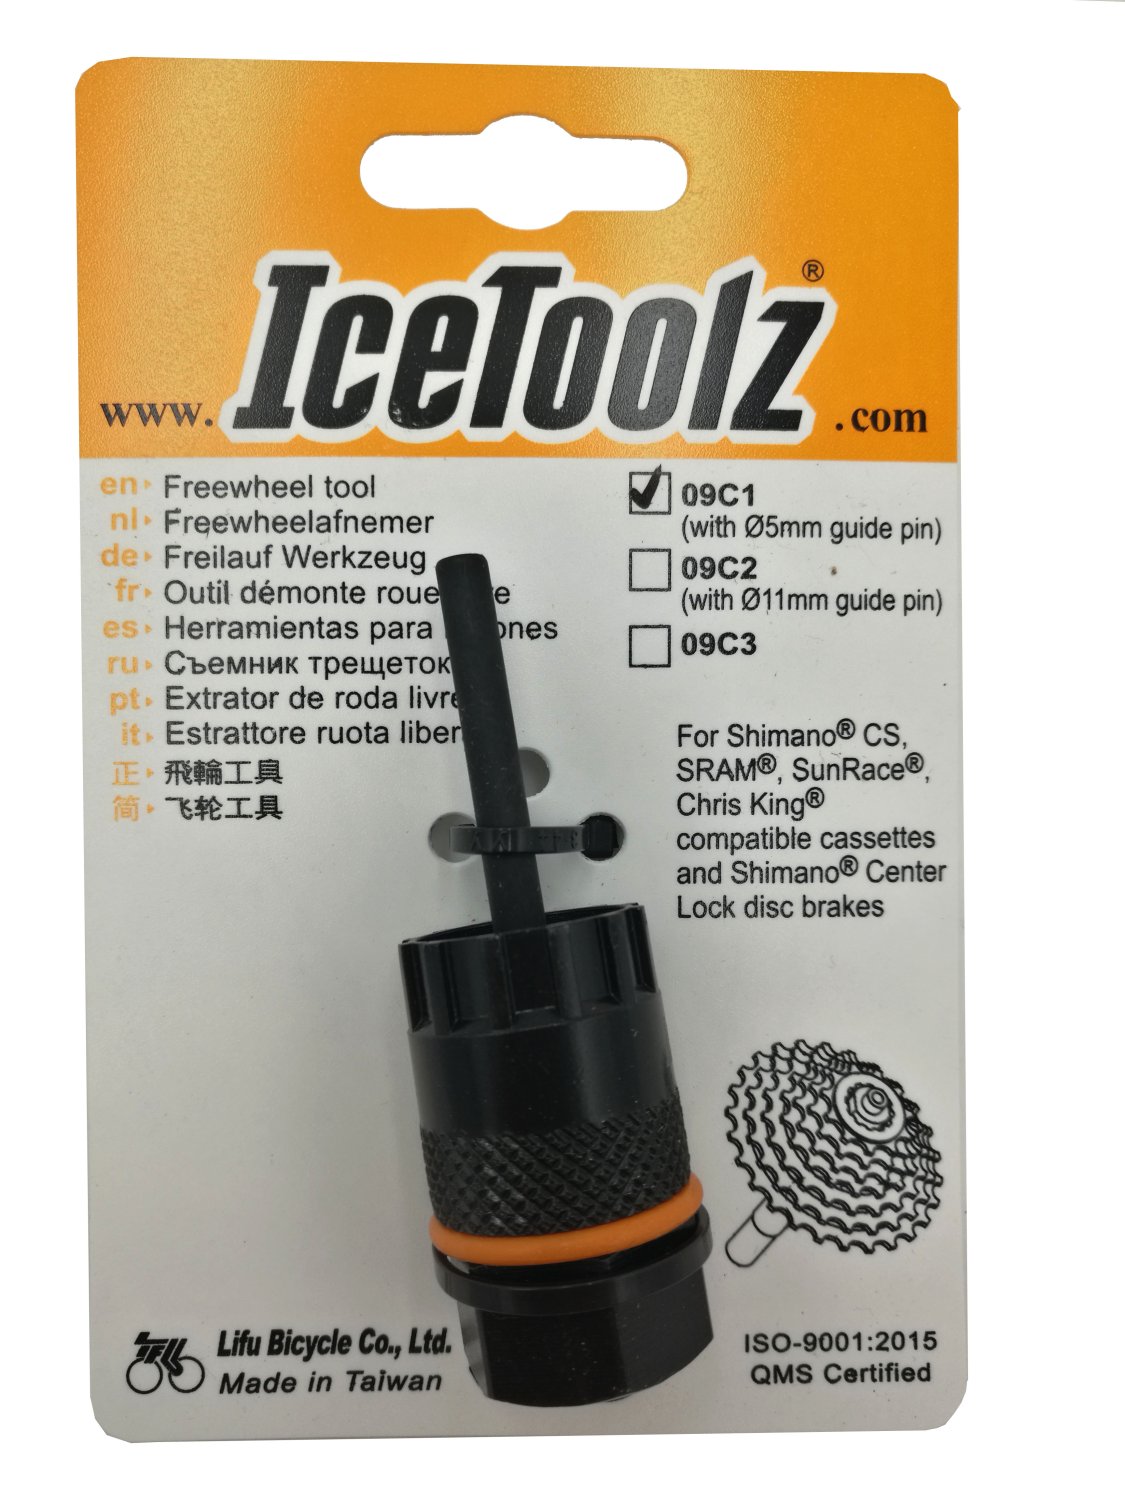 Съемник для кассет ICE TOOLZ Shimano CS/Center Lock, с направляющей , Сr-V сталь, 09C1 труборез ice toolz для труб 1 1 4 с направляющей 16g1